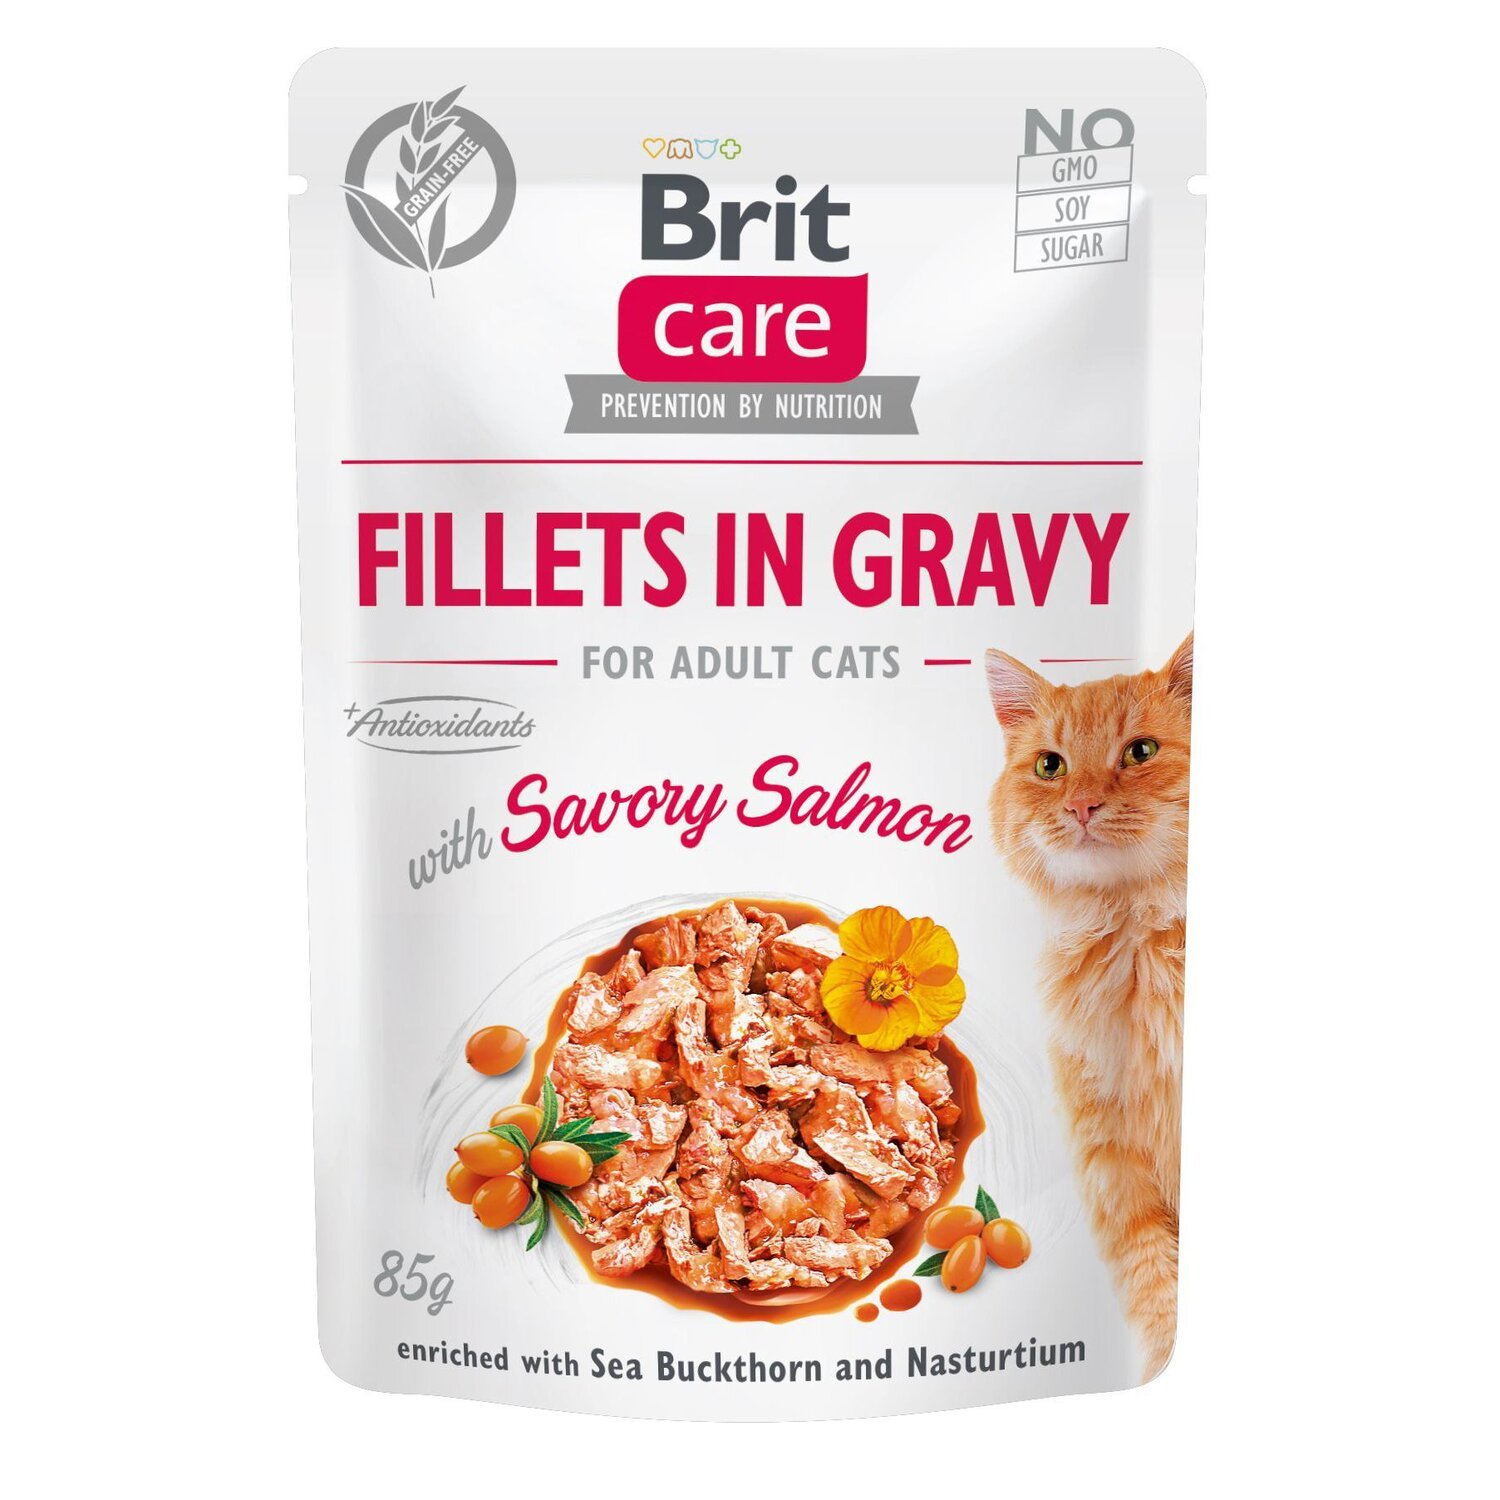 Влажный корм для кошек Brit Care Cat pouch 85г филе в соусе пикантный лосось фото 